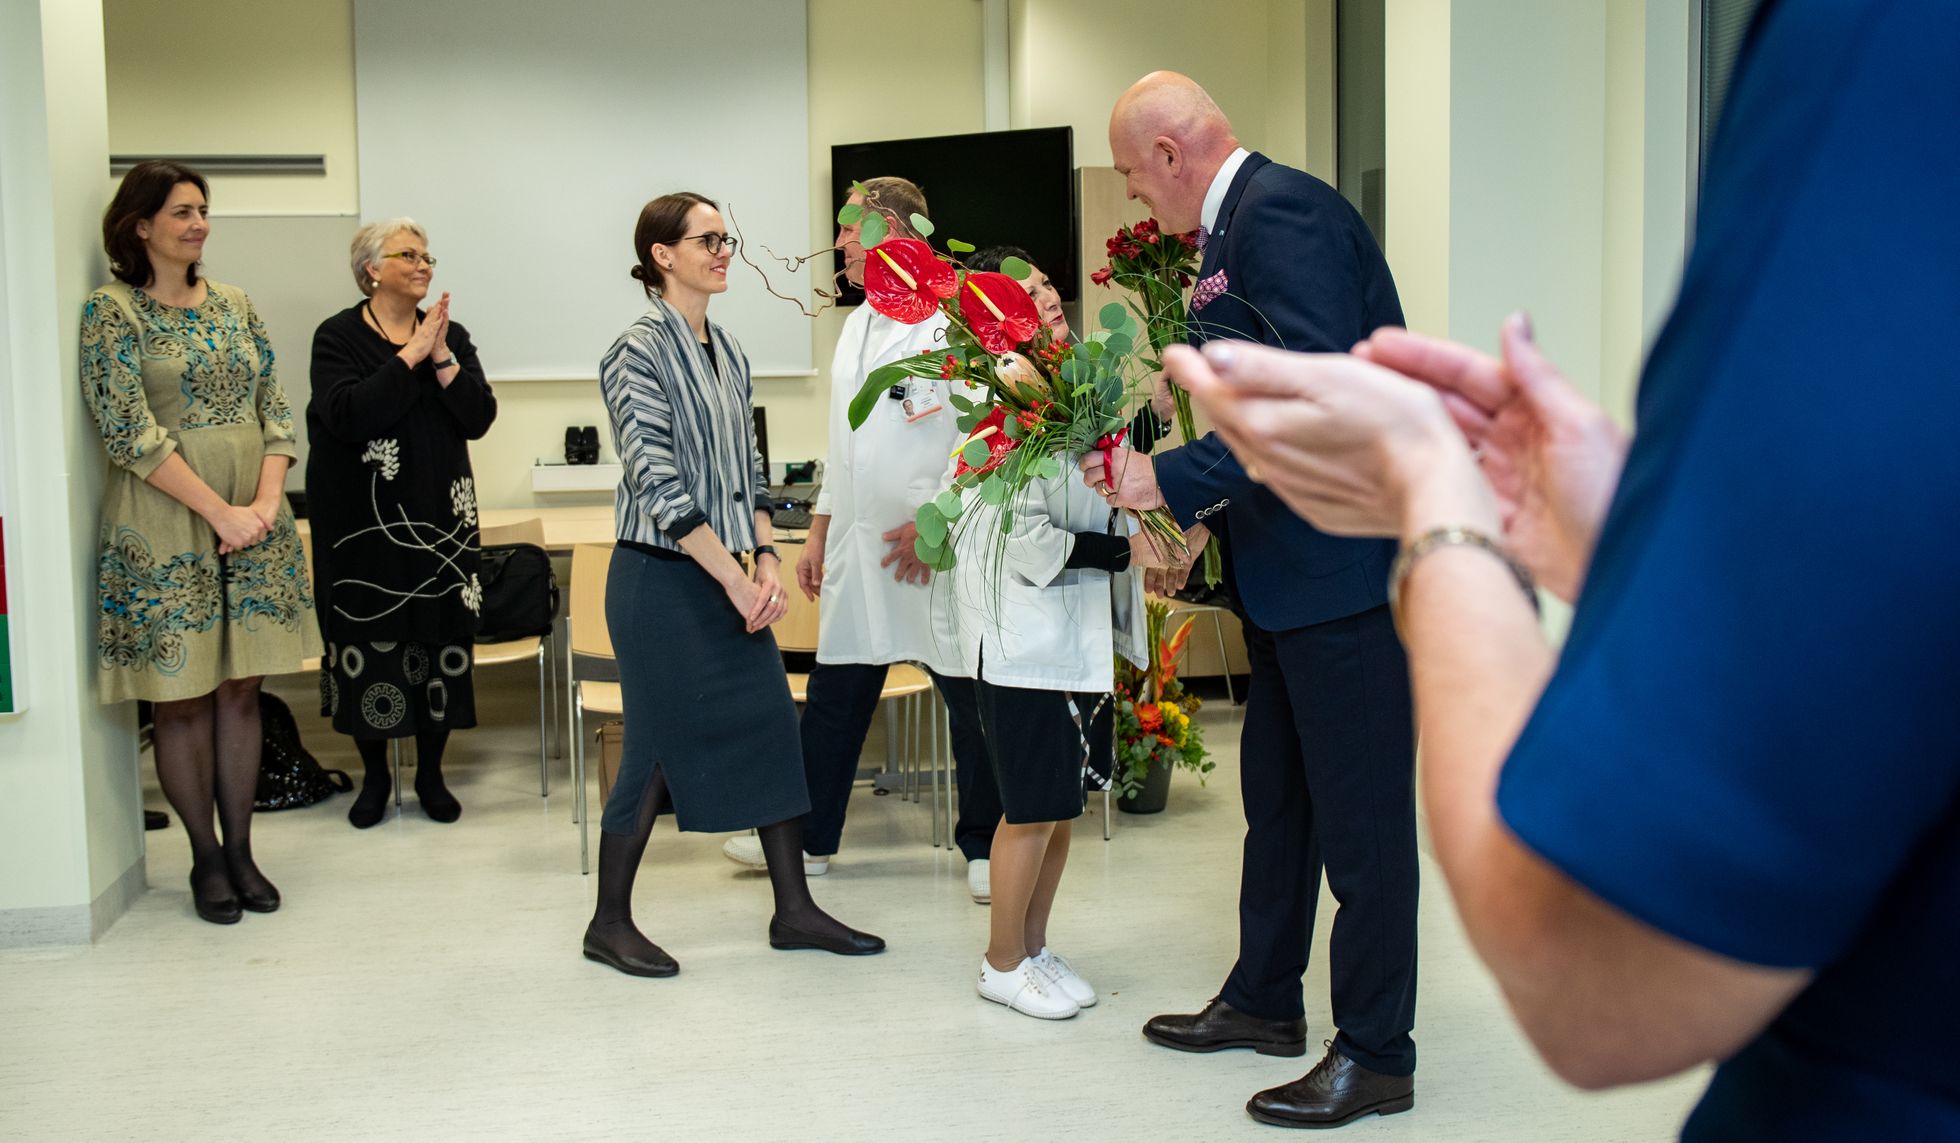 Neljapäeval kuulutati välja aasta arst. 2019. aastal kannab seda auväärt nimetust Jüri Teras.